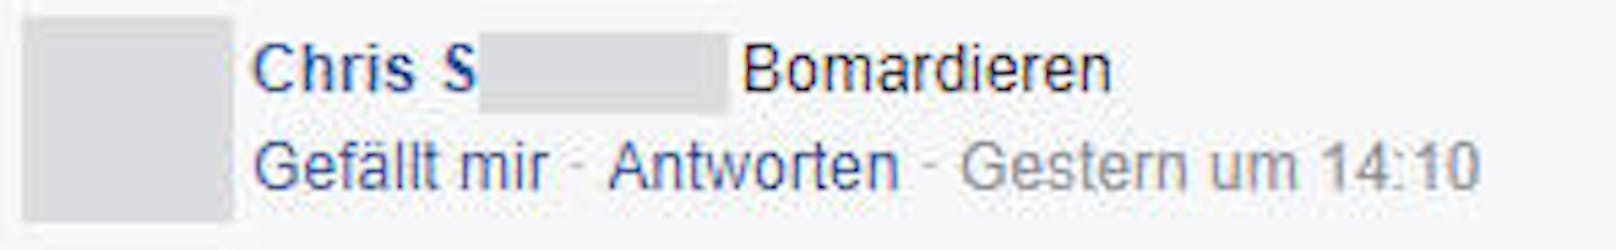 Das "Worst of" der Hass-Kommentare zum FPÖ-Posting.